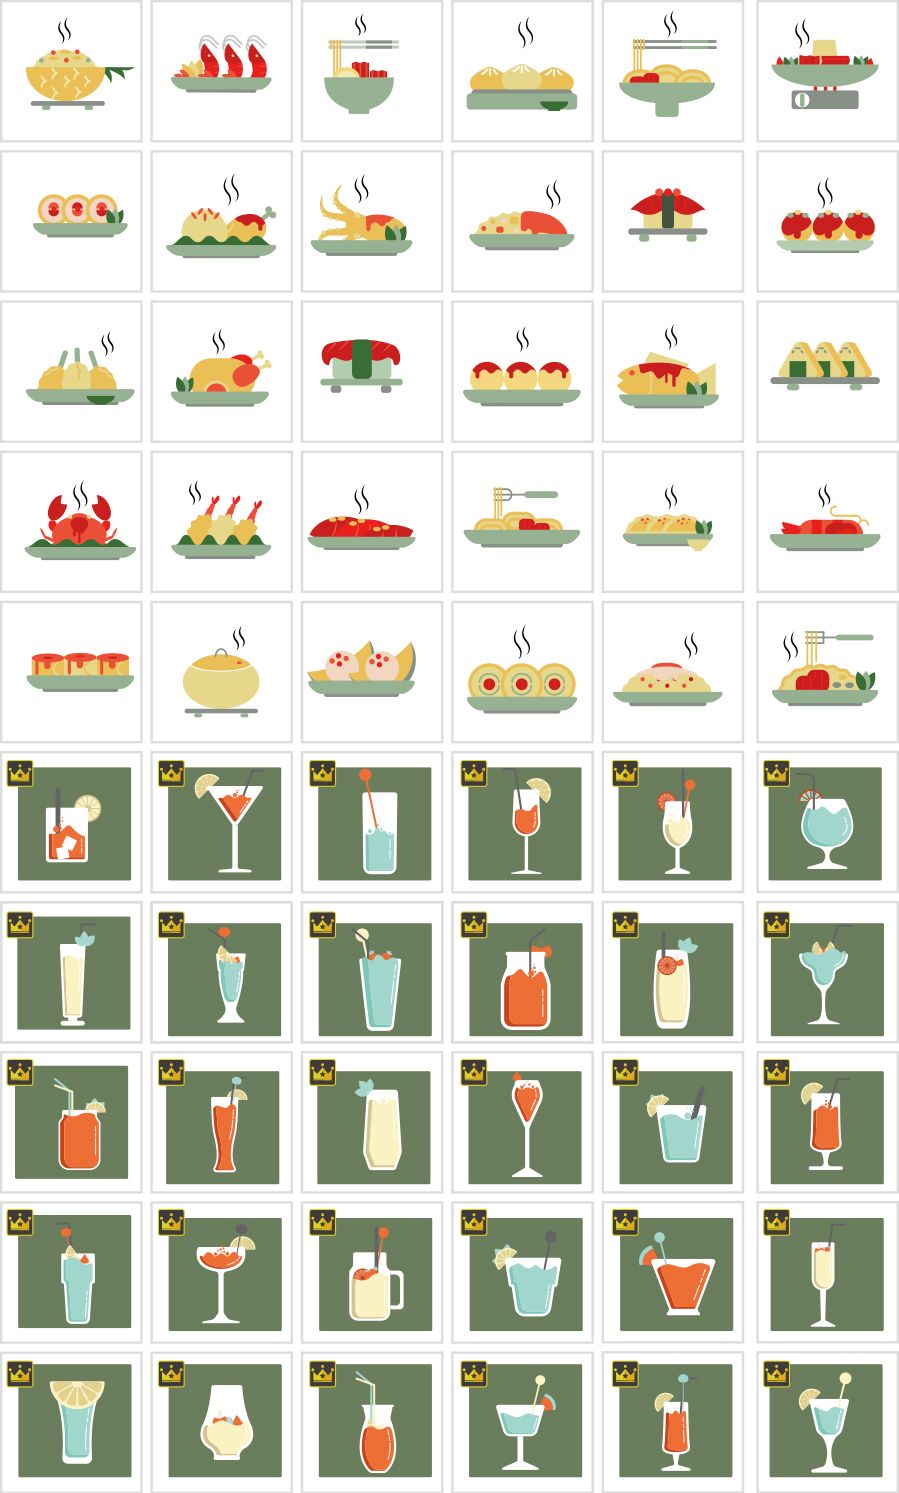 Biểu tượng thức ăn và đồ uống châu Á